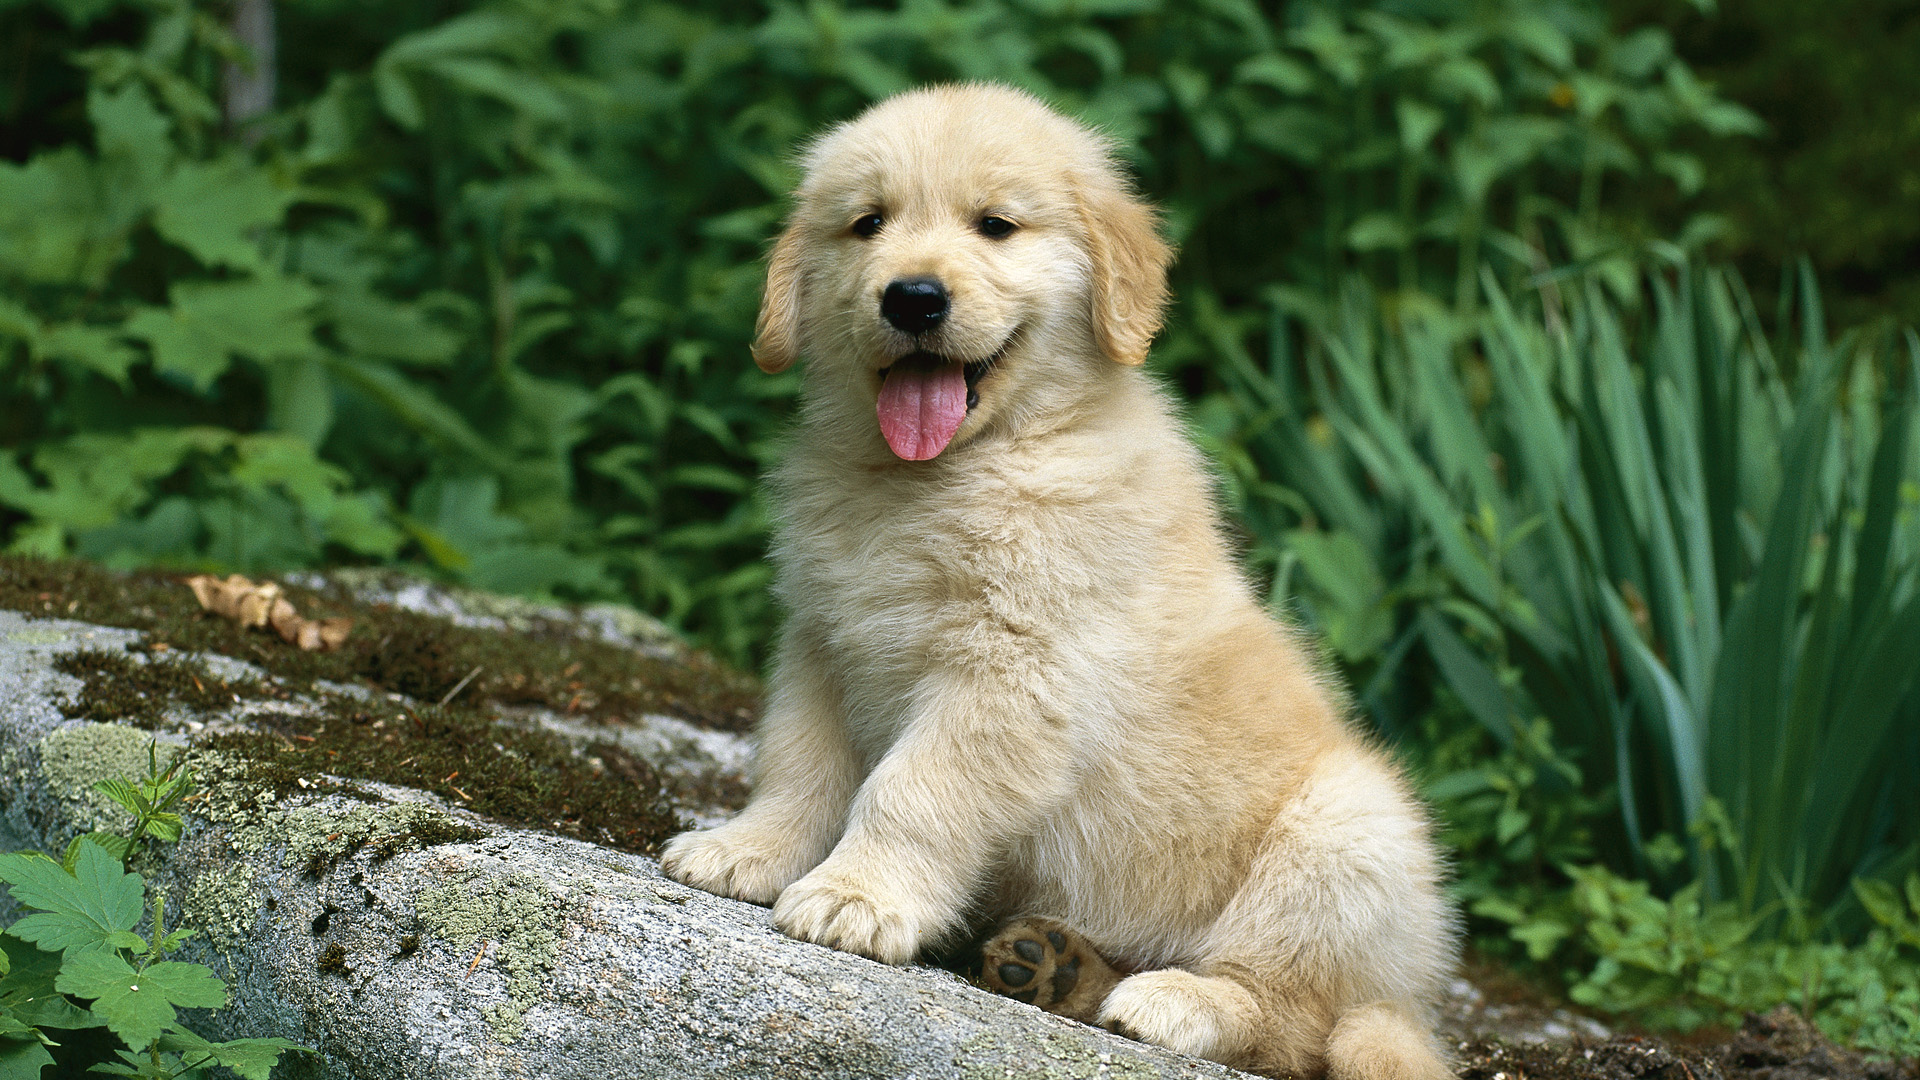 Golden Retriever Puppies Backgrounds - Wallpaper, High Definition, High